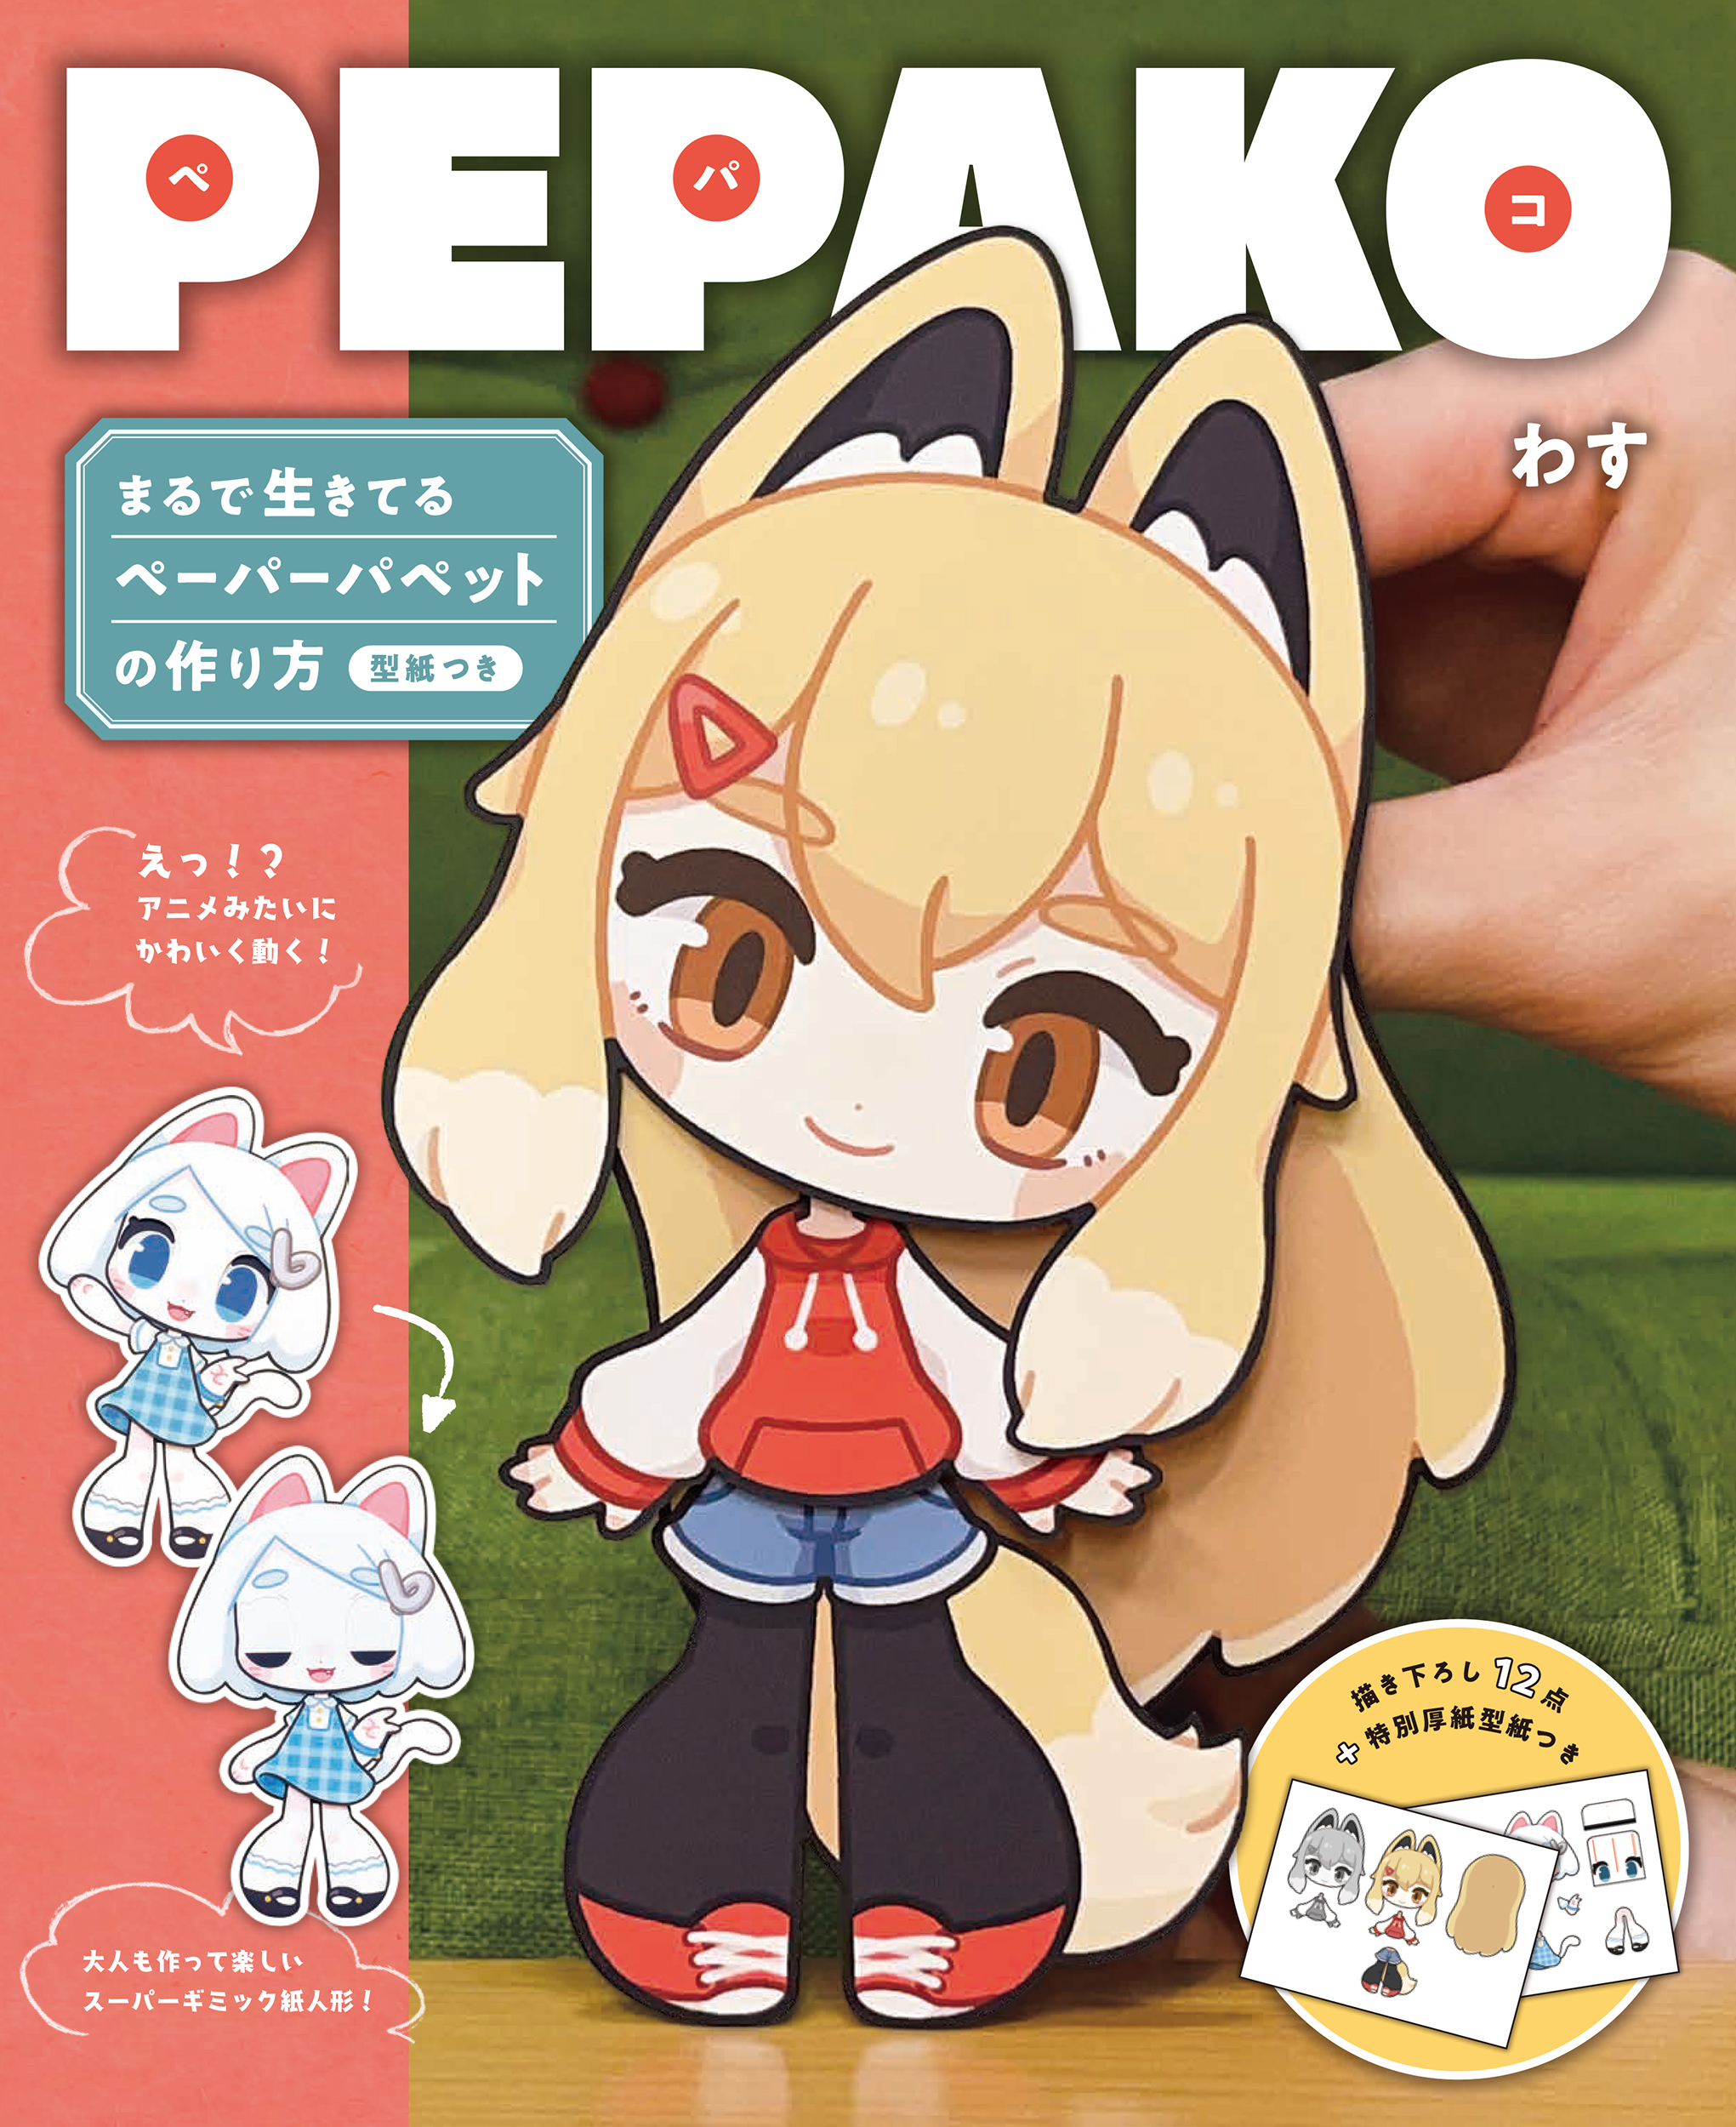 アニメみたいにかわいく動く 大人も作って楽しいスーパーギミック紙人形 Pepako の作り方 株式会社誠文堂新光社のプレスリリース